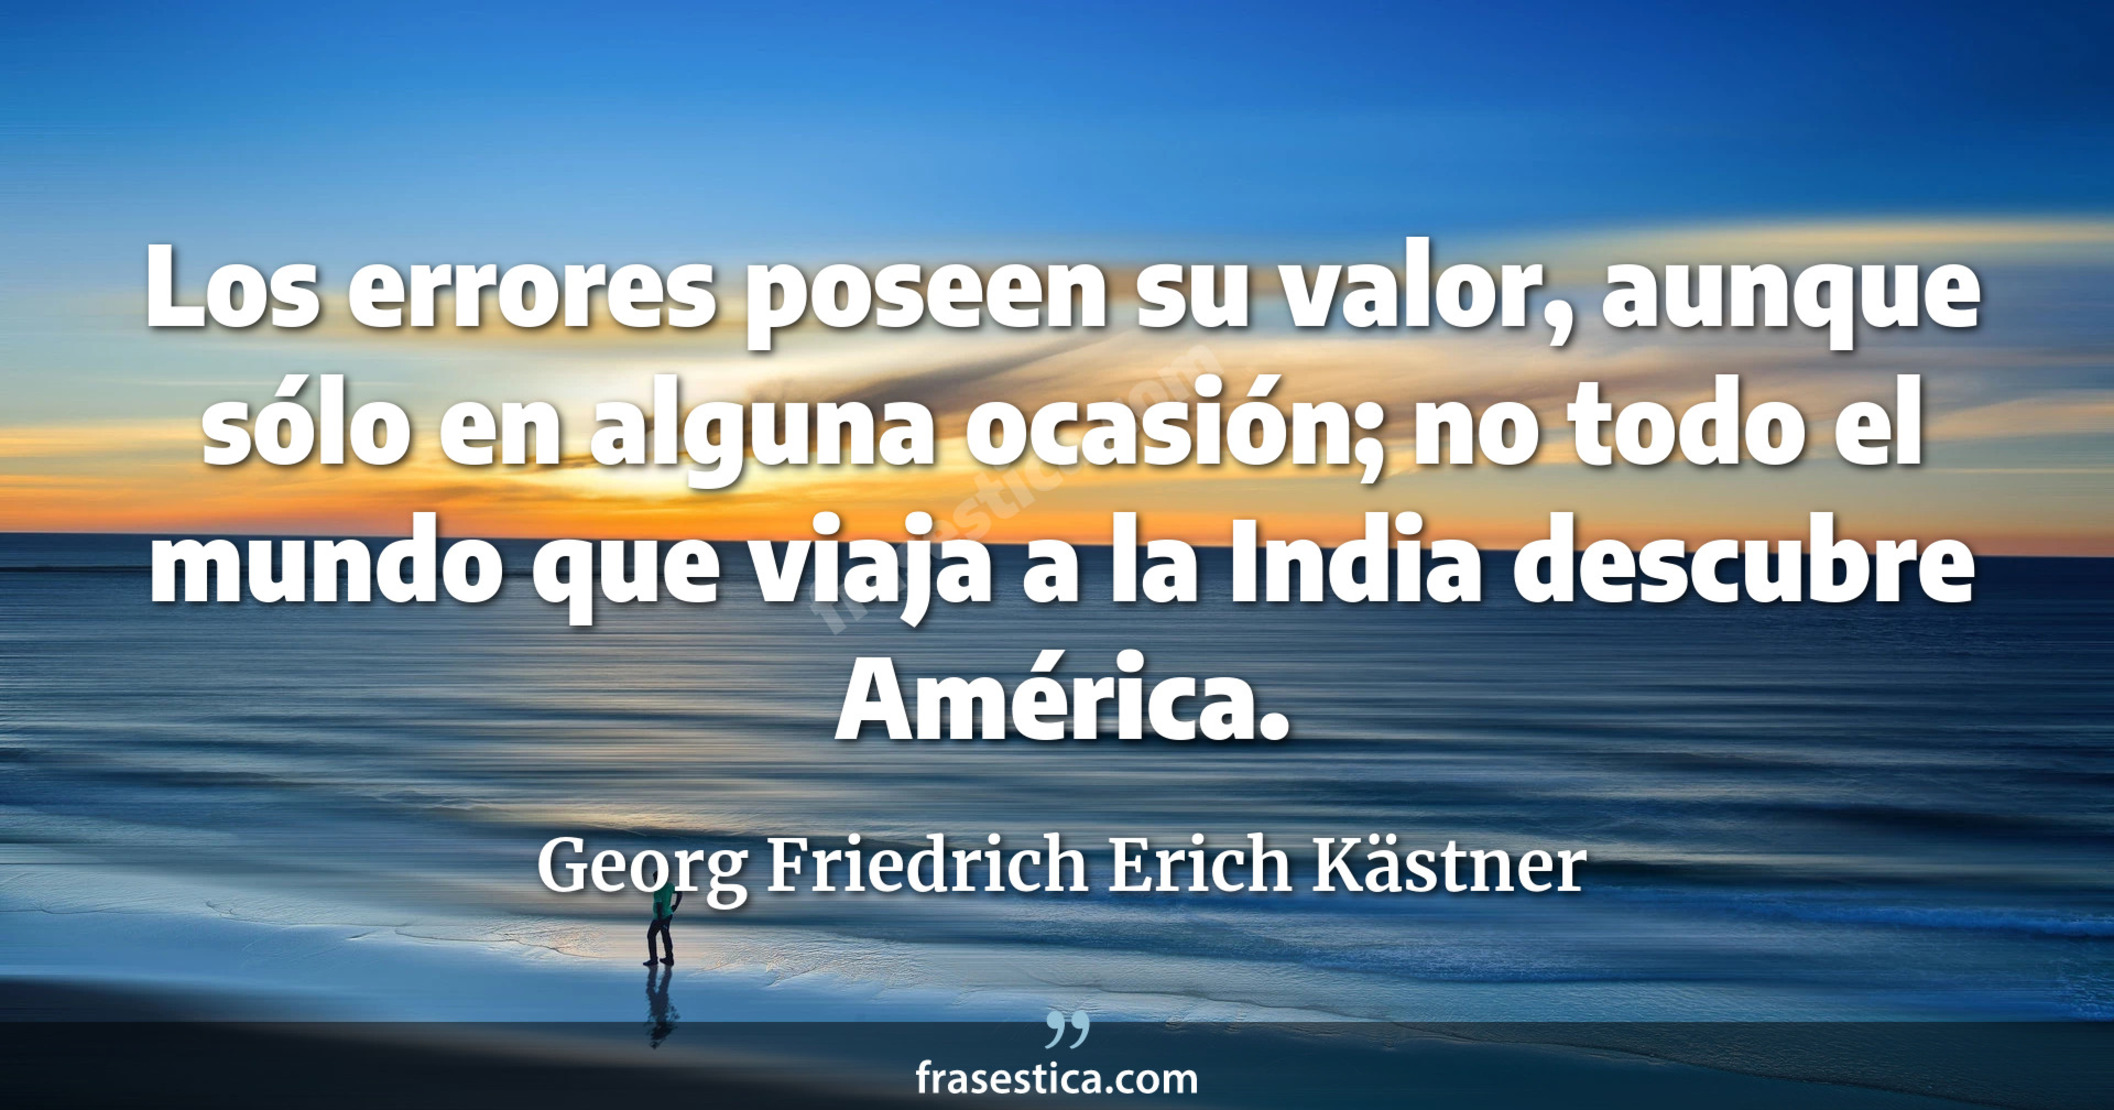 Los errores poseen su valor, aunque sólo en alguna ocasión; no todo el mundo que viaja a la India descubre América. - Georg Friedrich Erich Kästner